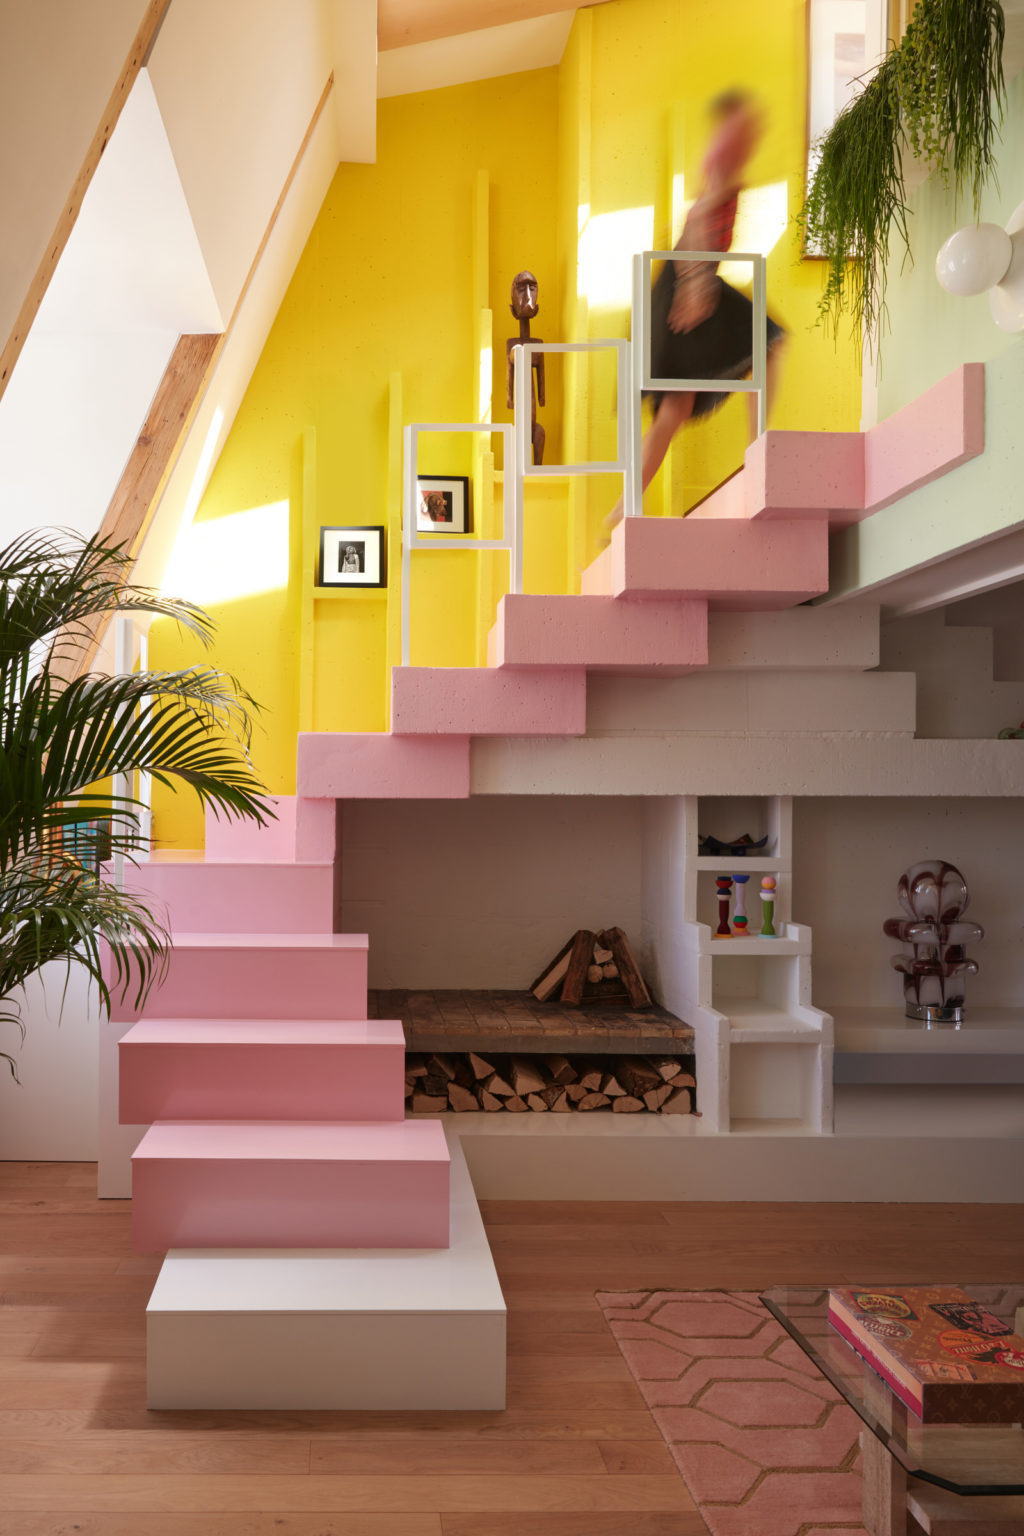 Cầu thang dẫn lối lên tầng 2 được sơn màu hồng phấn điệu đà, nữ tính, nổi bật trên sàn gỗ nâu ấm áp và tường trắng thanh lịch. Cây xanh cũng góp phần giúp cho những đường nét cứng nhắc trong nội thất trở nên mềm mại, duyên dáng hơn.